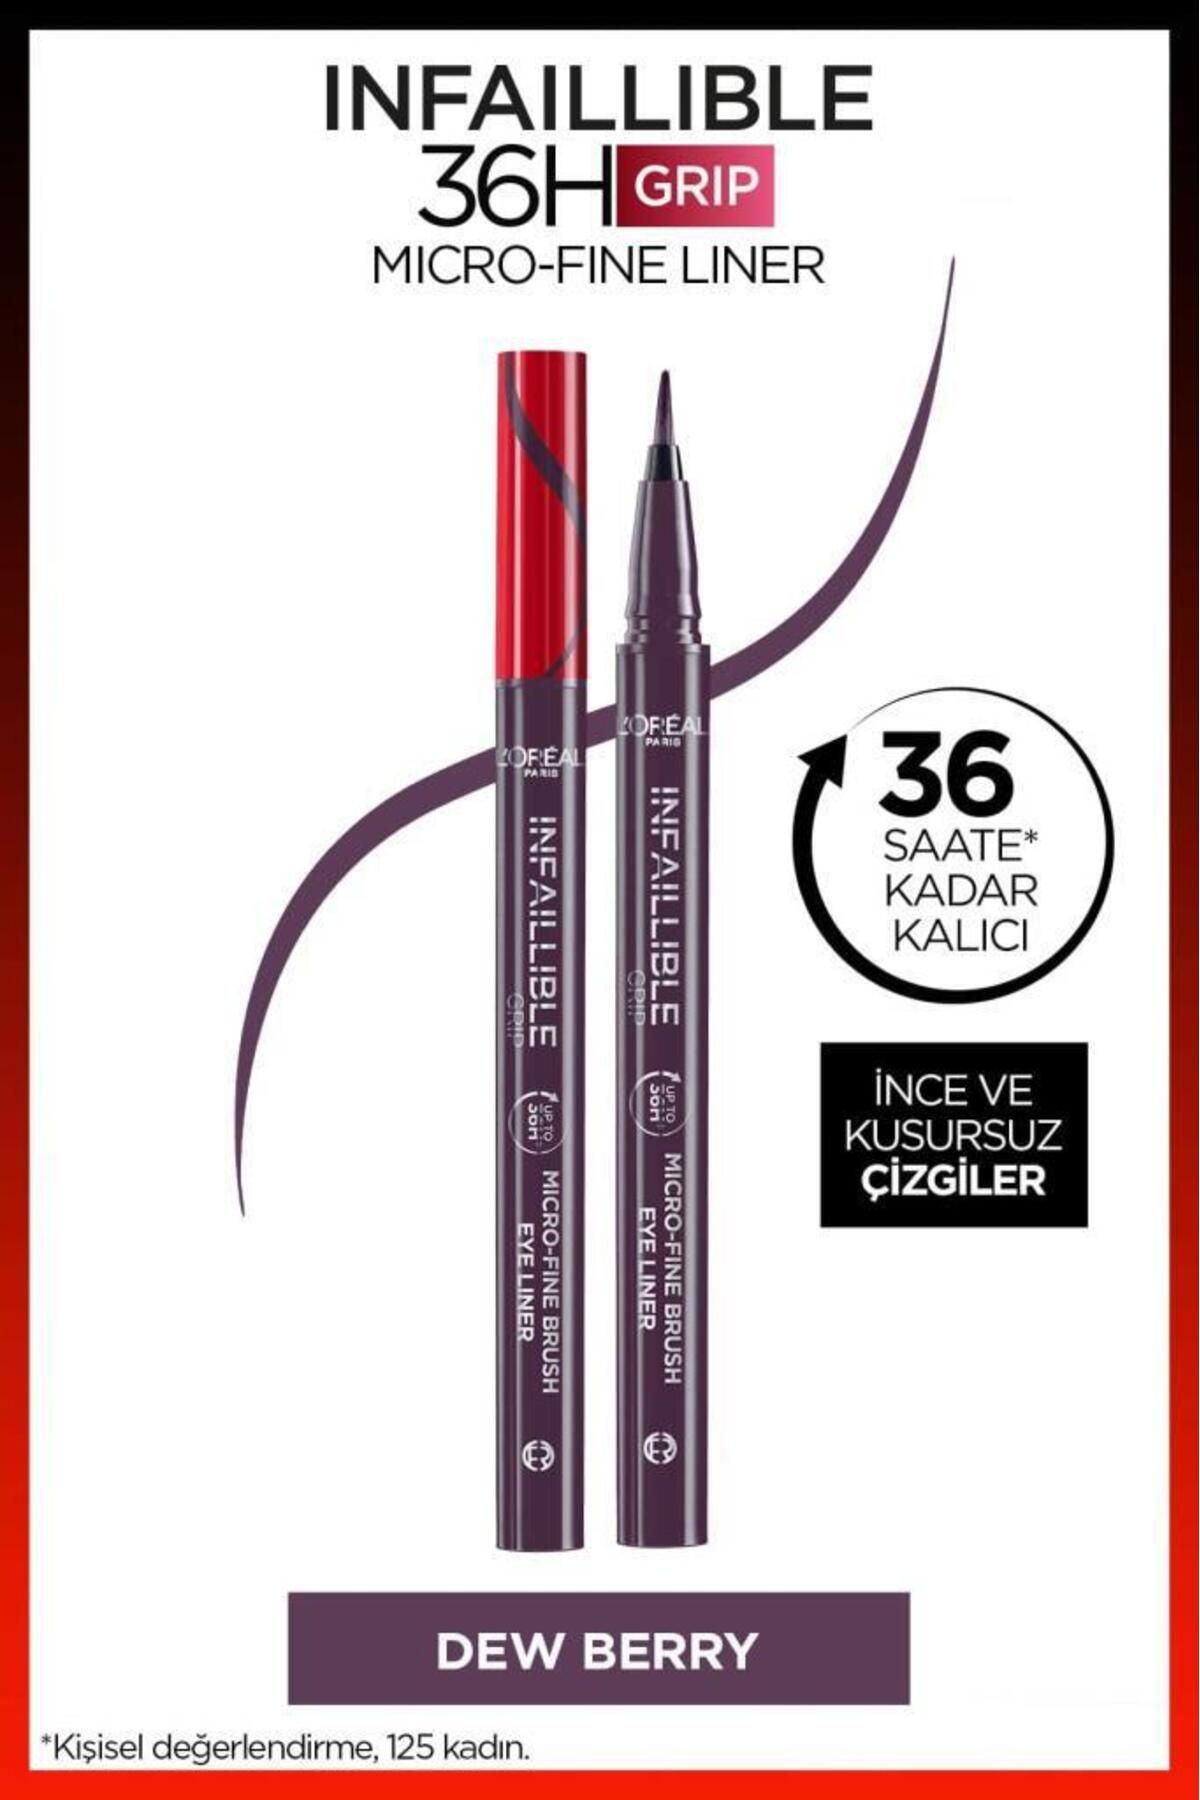 L'Oreal Paris L'oréal Paris Infaillible 36h Grip Micro Fine Eyeliner 04 Dew Berry